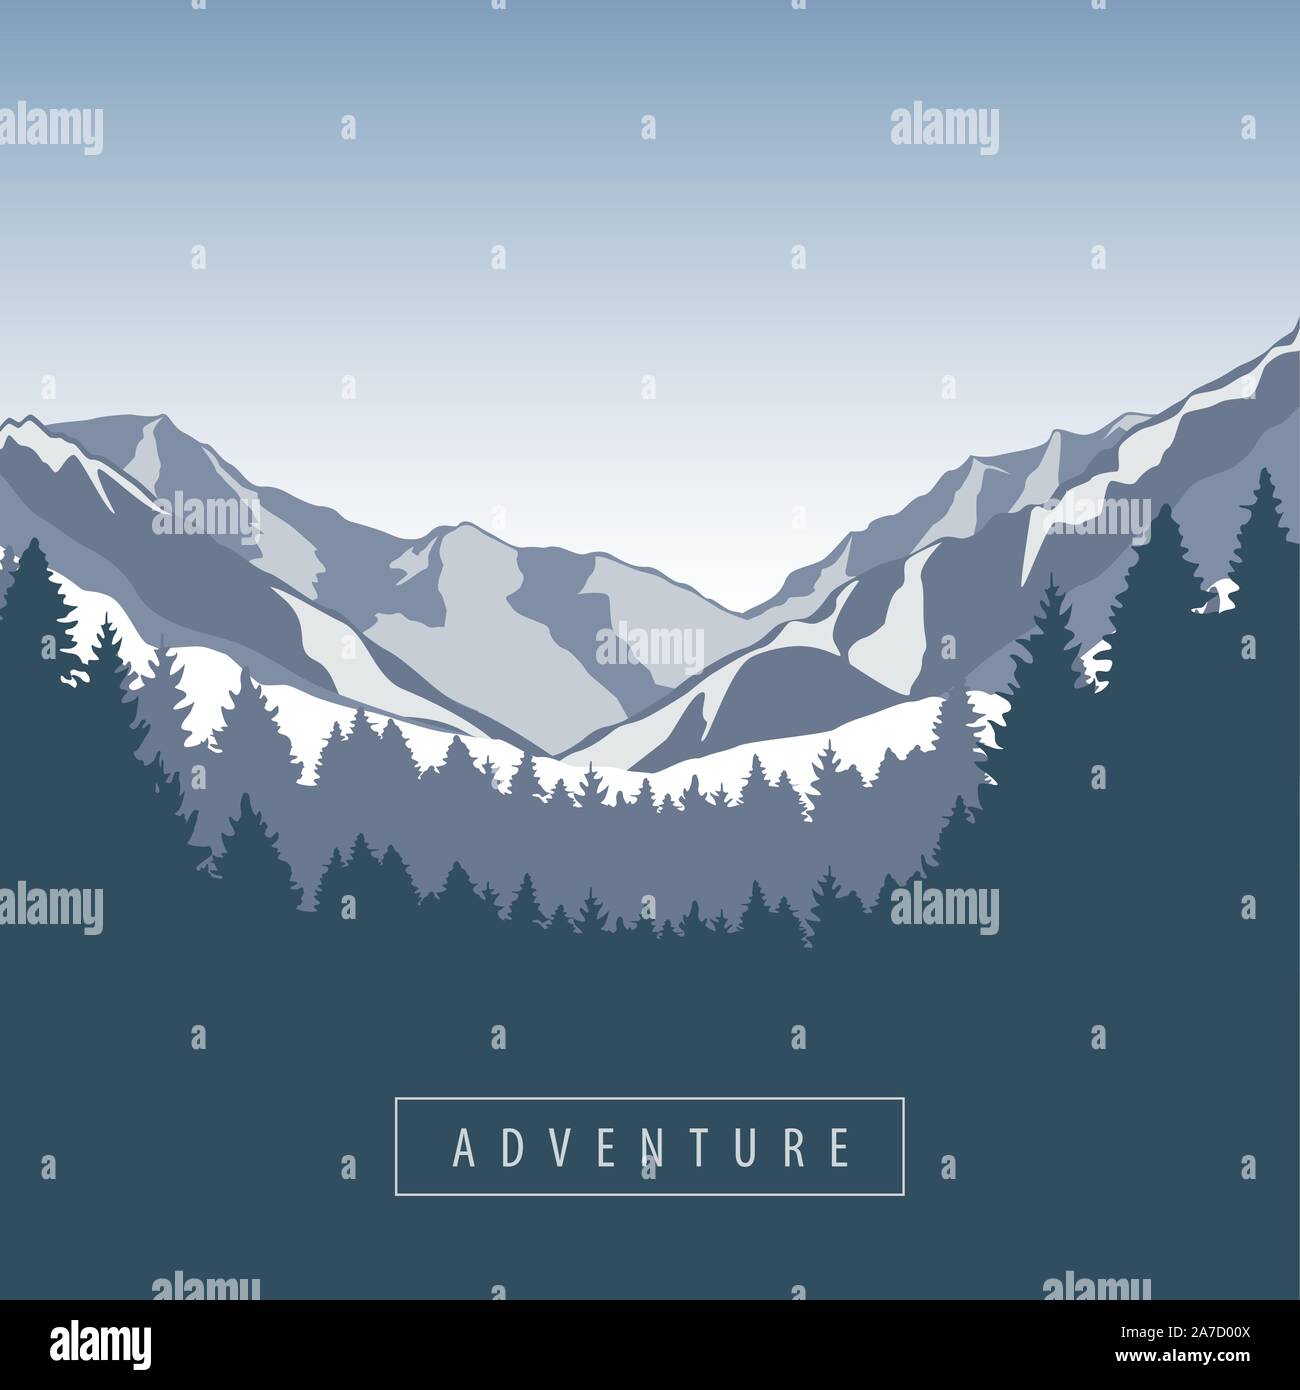 Montaña nevada aventura y naturaleza del paisaje forestal ilustración vectorial EPS10 Ilustración del Vector